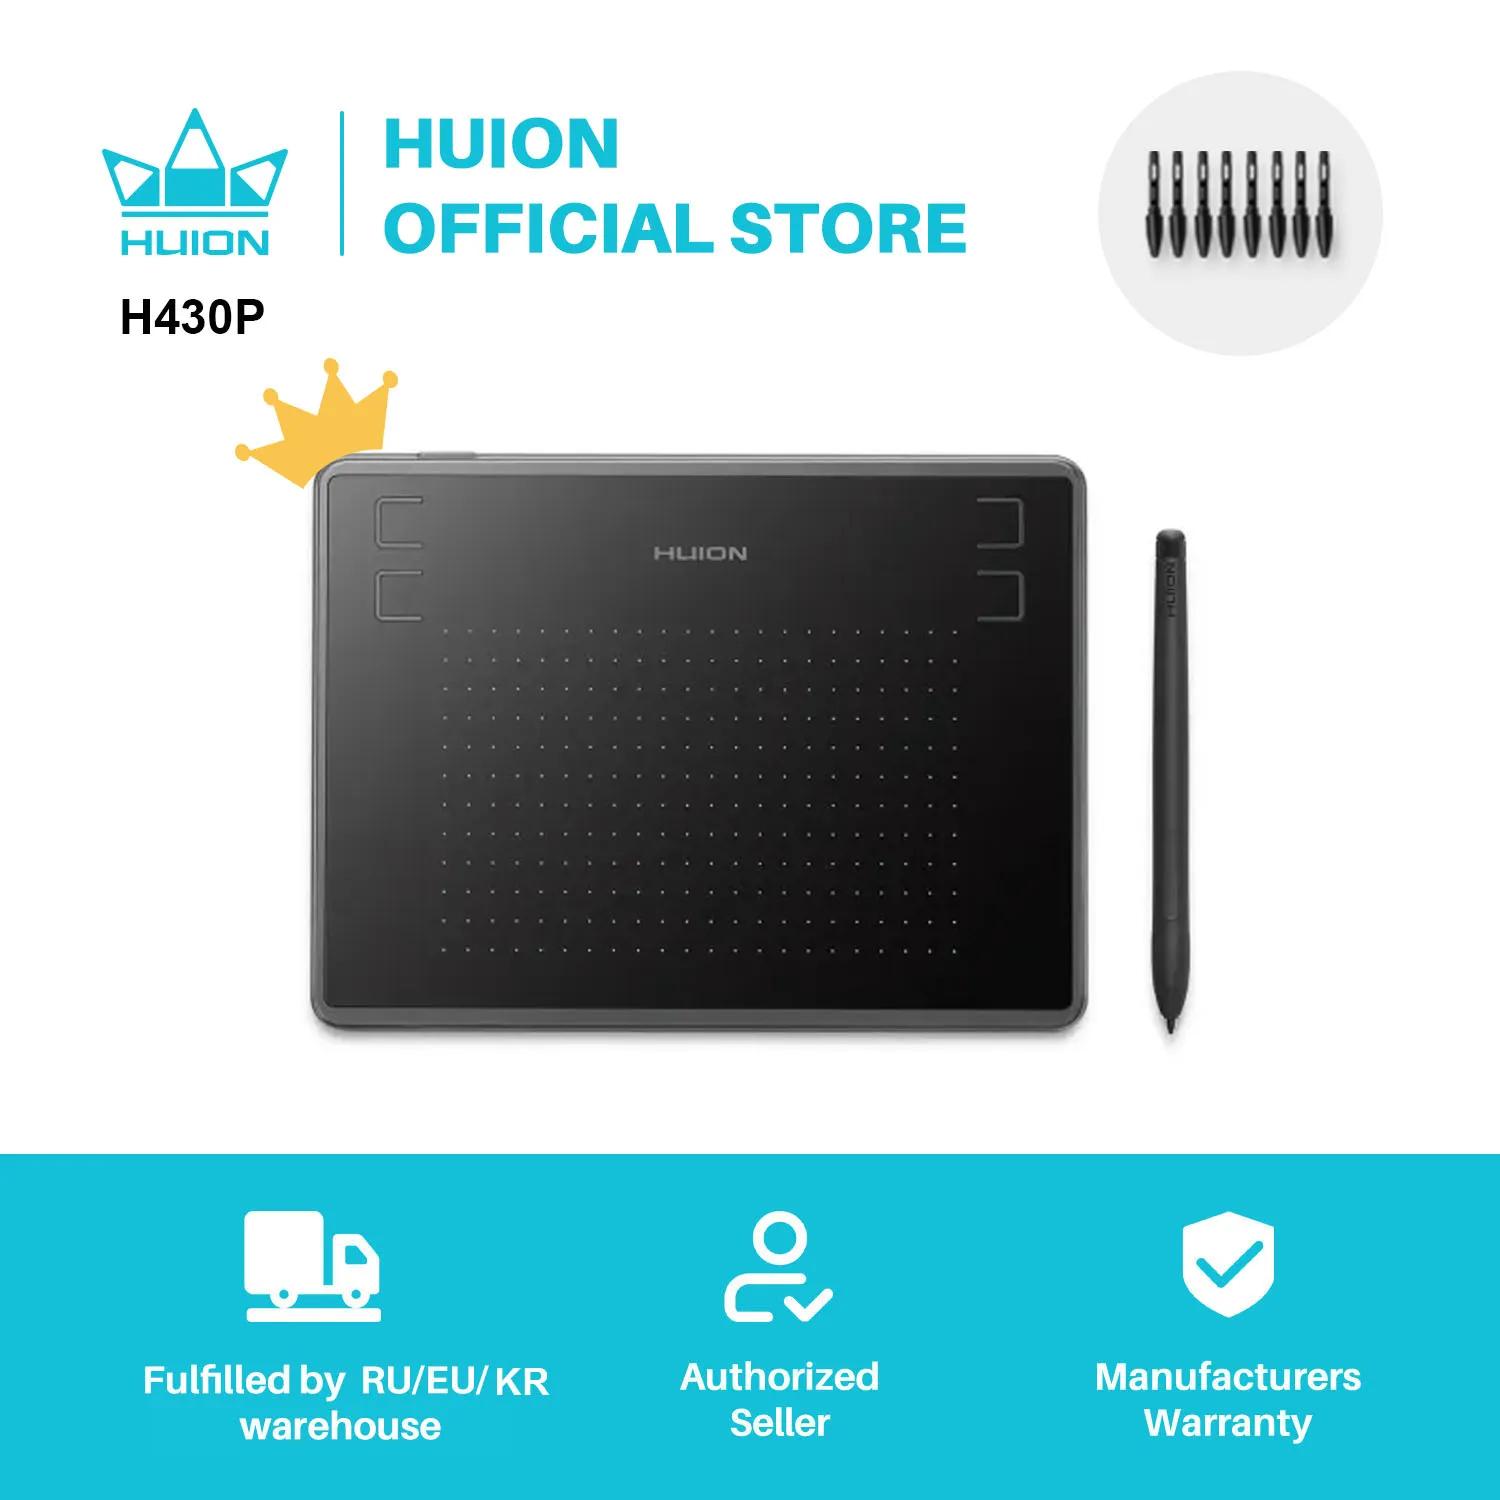 HUION H430P 디지털 태블릿 마이크로 USB 서명 그래픽 드로잉 펜, 태블릿 OSU 게임, 배터리 프리 태블릿, 안드로이드 맥 윈도우